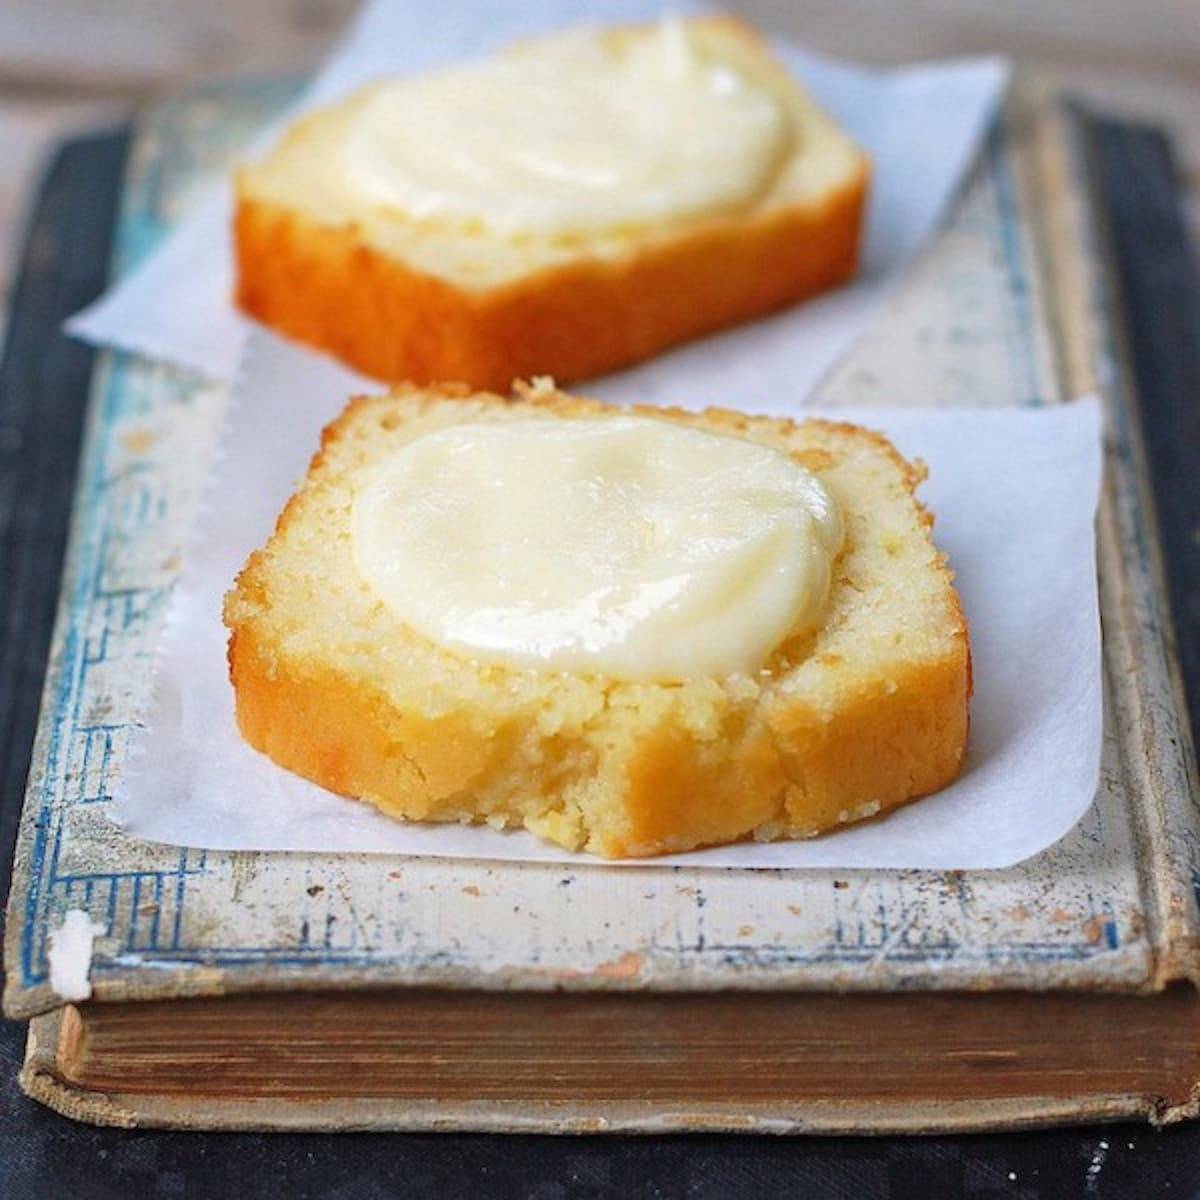 Honey butter spread on a homemade lemon loaf. 